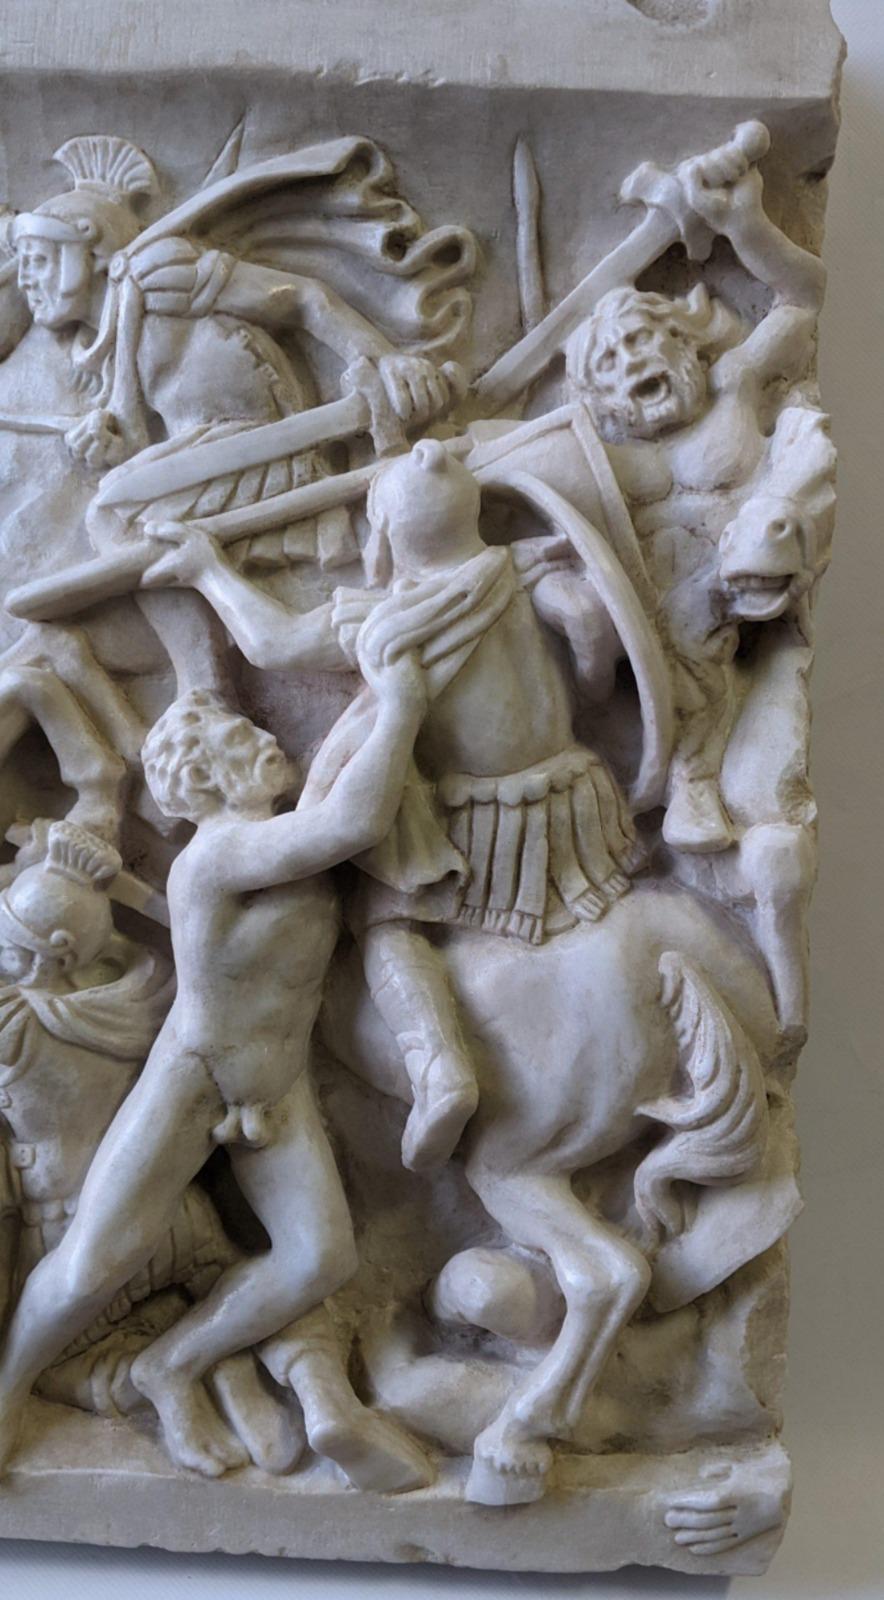 Haut-relief représentant une bataille 
sculpté sur du marbre blanc de Carrare 
dimensions 
28.5 x 22 x 4 cm 
poids 6